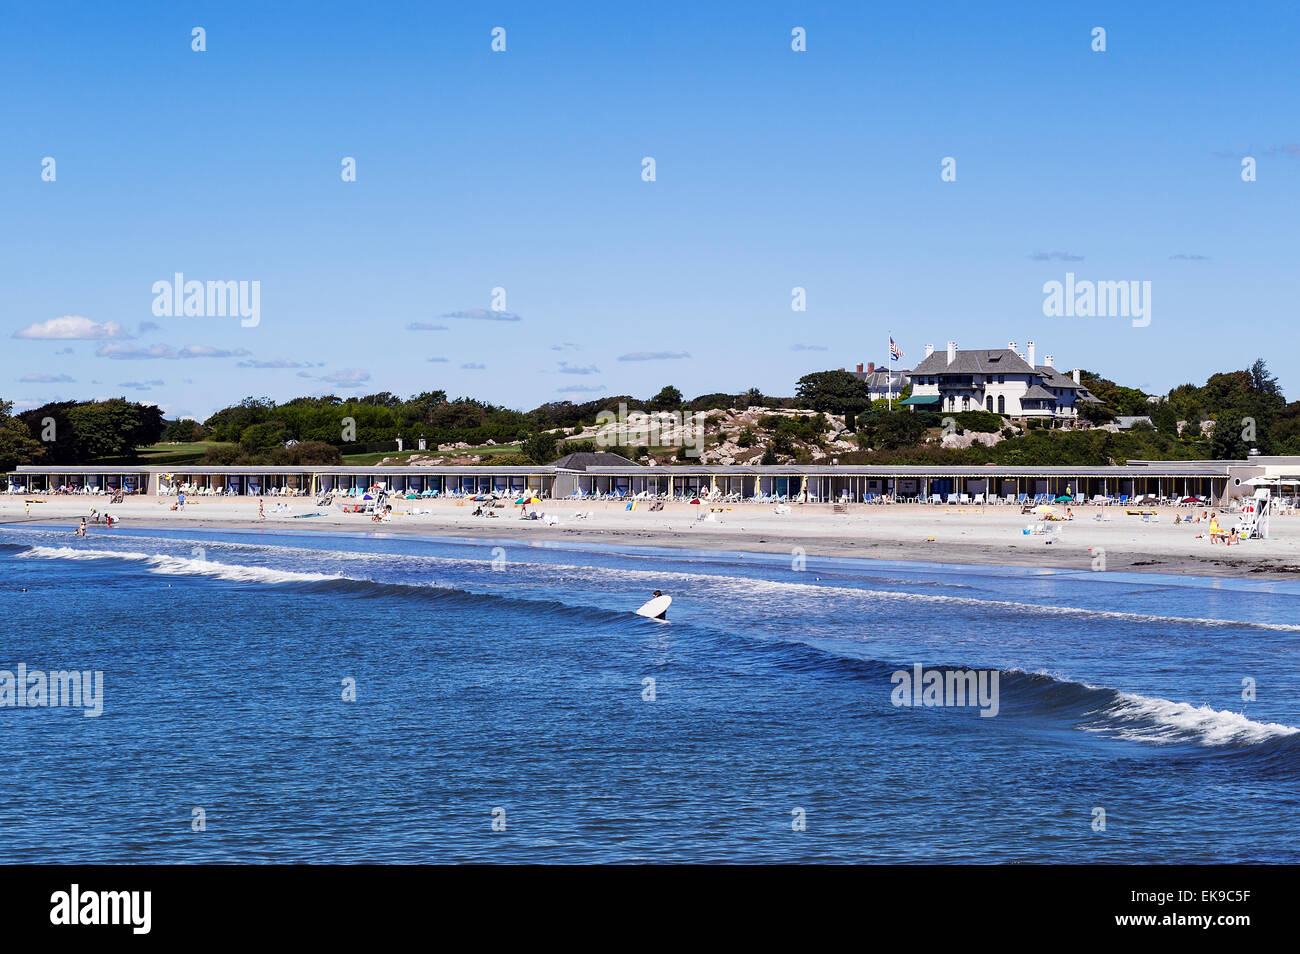 Schizzando la spiaggia di roccia Associazione, noto anche come spiaggia Bailey è un elite spiaggia privata e club a Newport, Rhode Island, STATI UNITI D'AMERICA Foto Stock